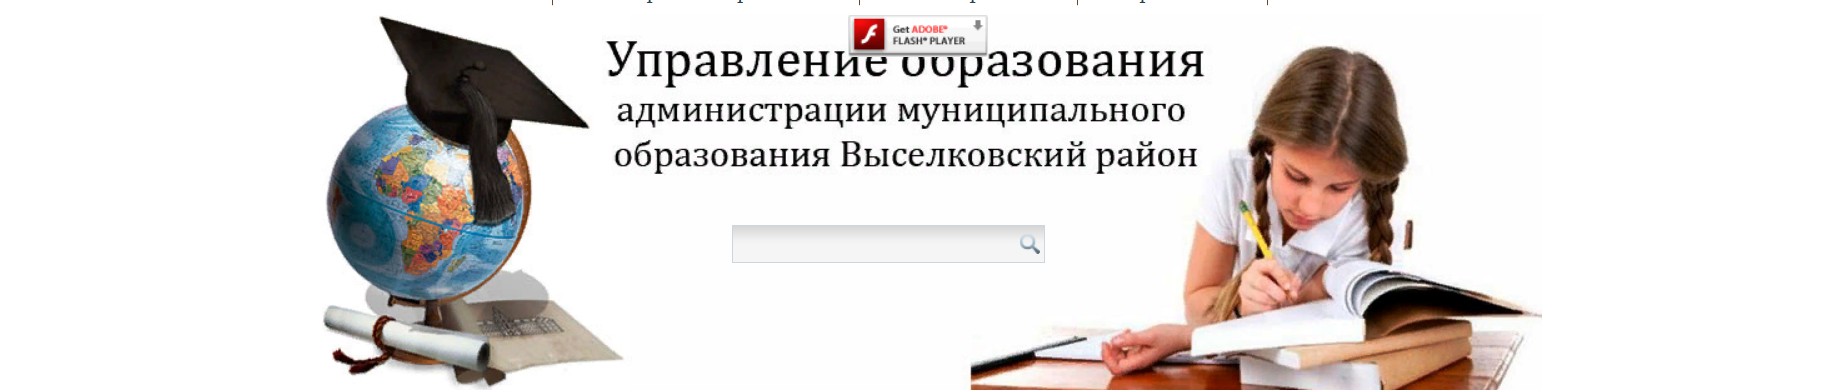 сайт Управления образования Выселковского района